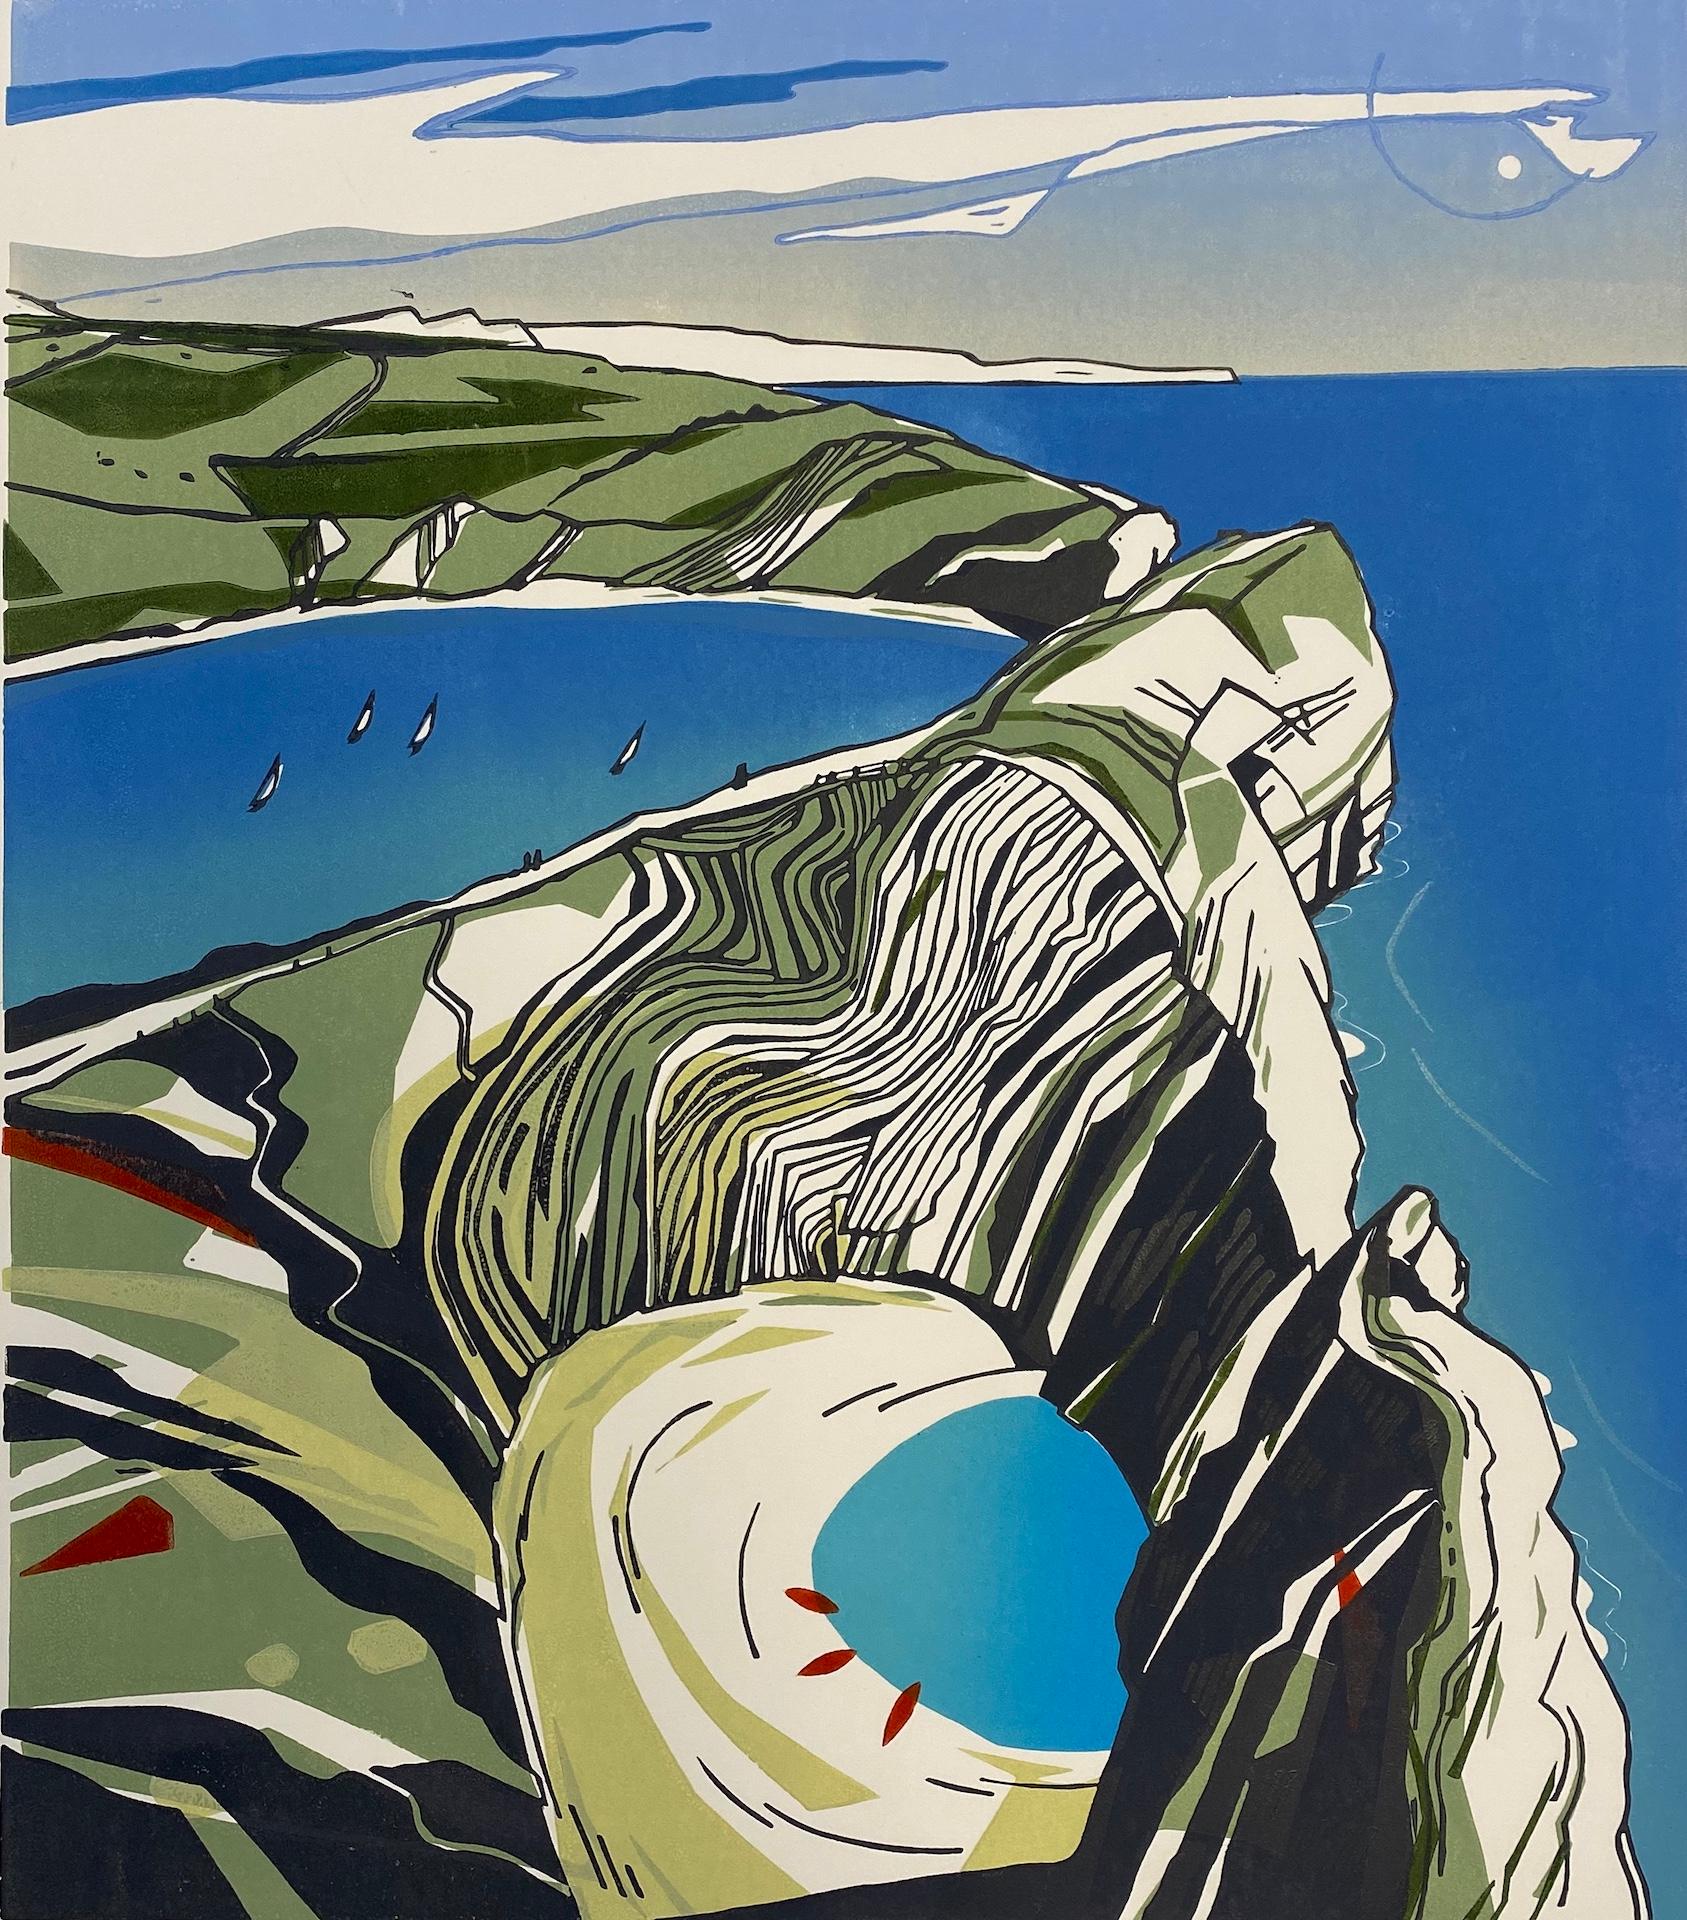 Colin Moore-Stuhl, Hole, Lulworth, Dorset, Kunst, Landschaftskunst, Küstenkunst